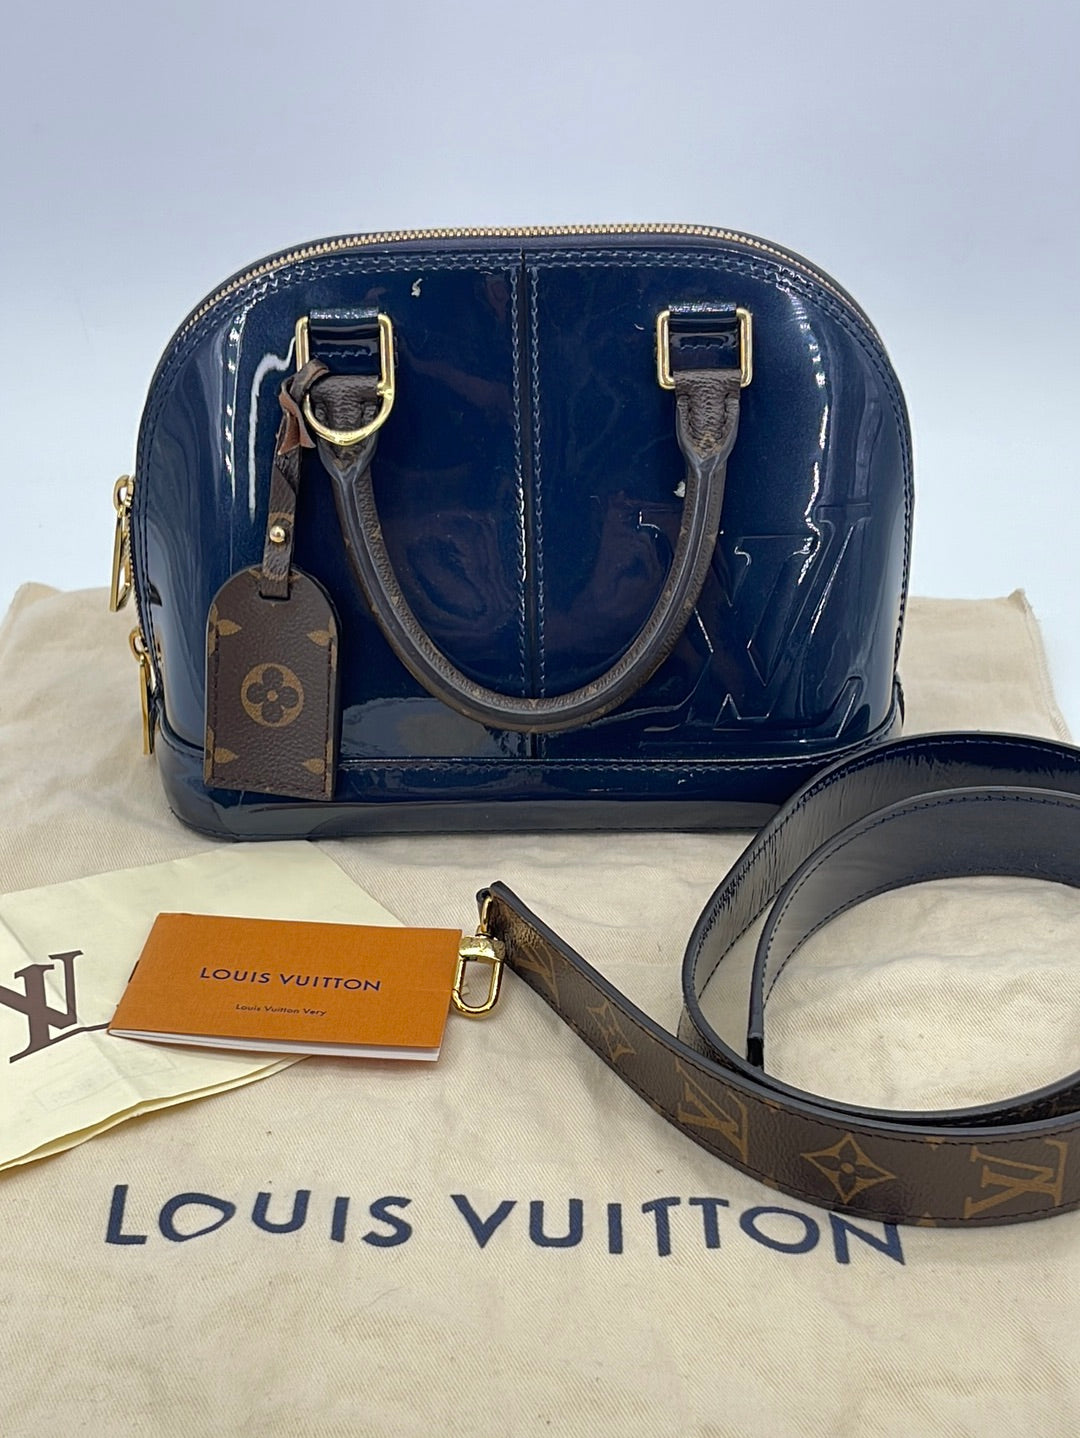 LOUIS VUITTON Alma PM Monogram Vernis Leather Satchel Bag Blue